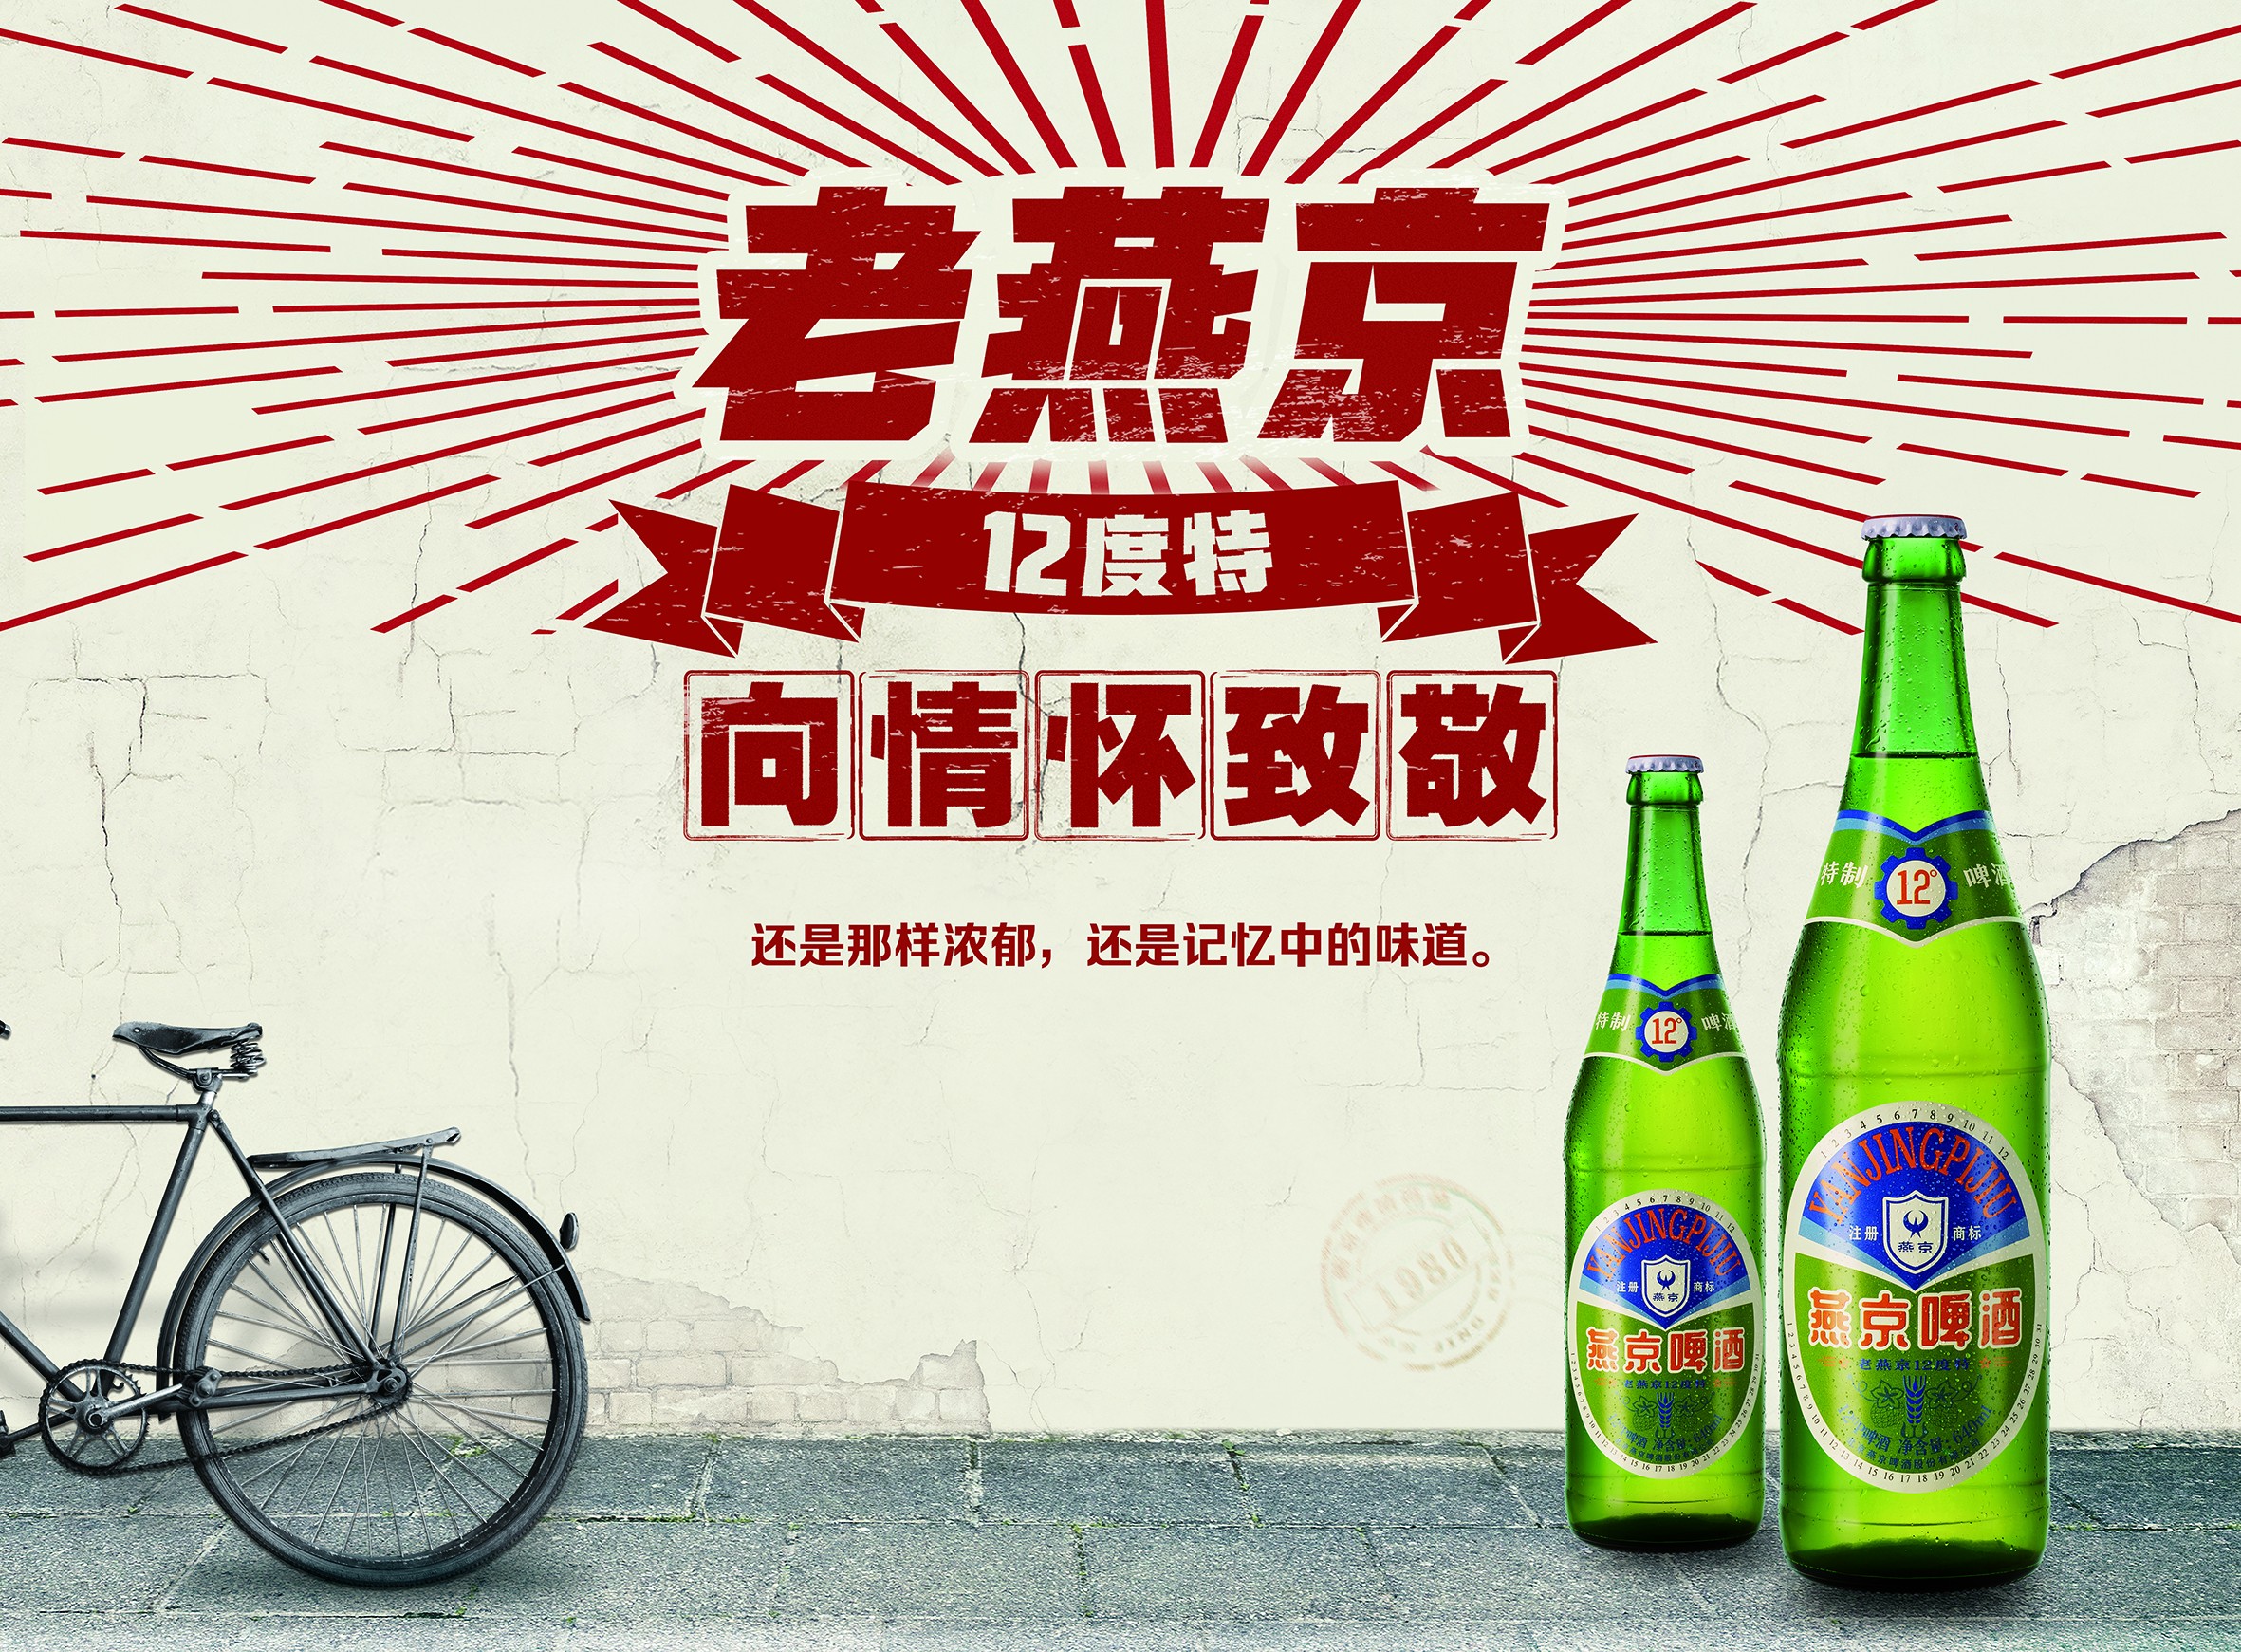 燕京瓶啤价格(燕京啤酒瓶装价格表) - 美酒邦